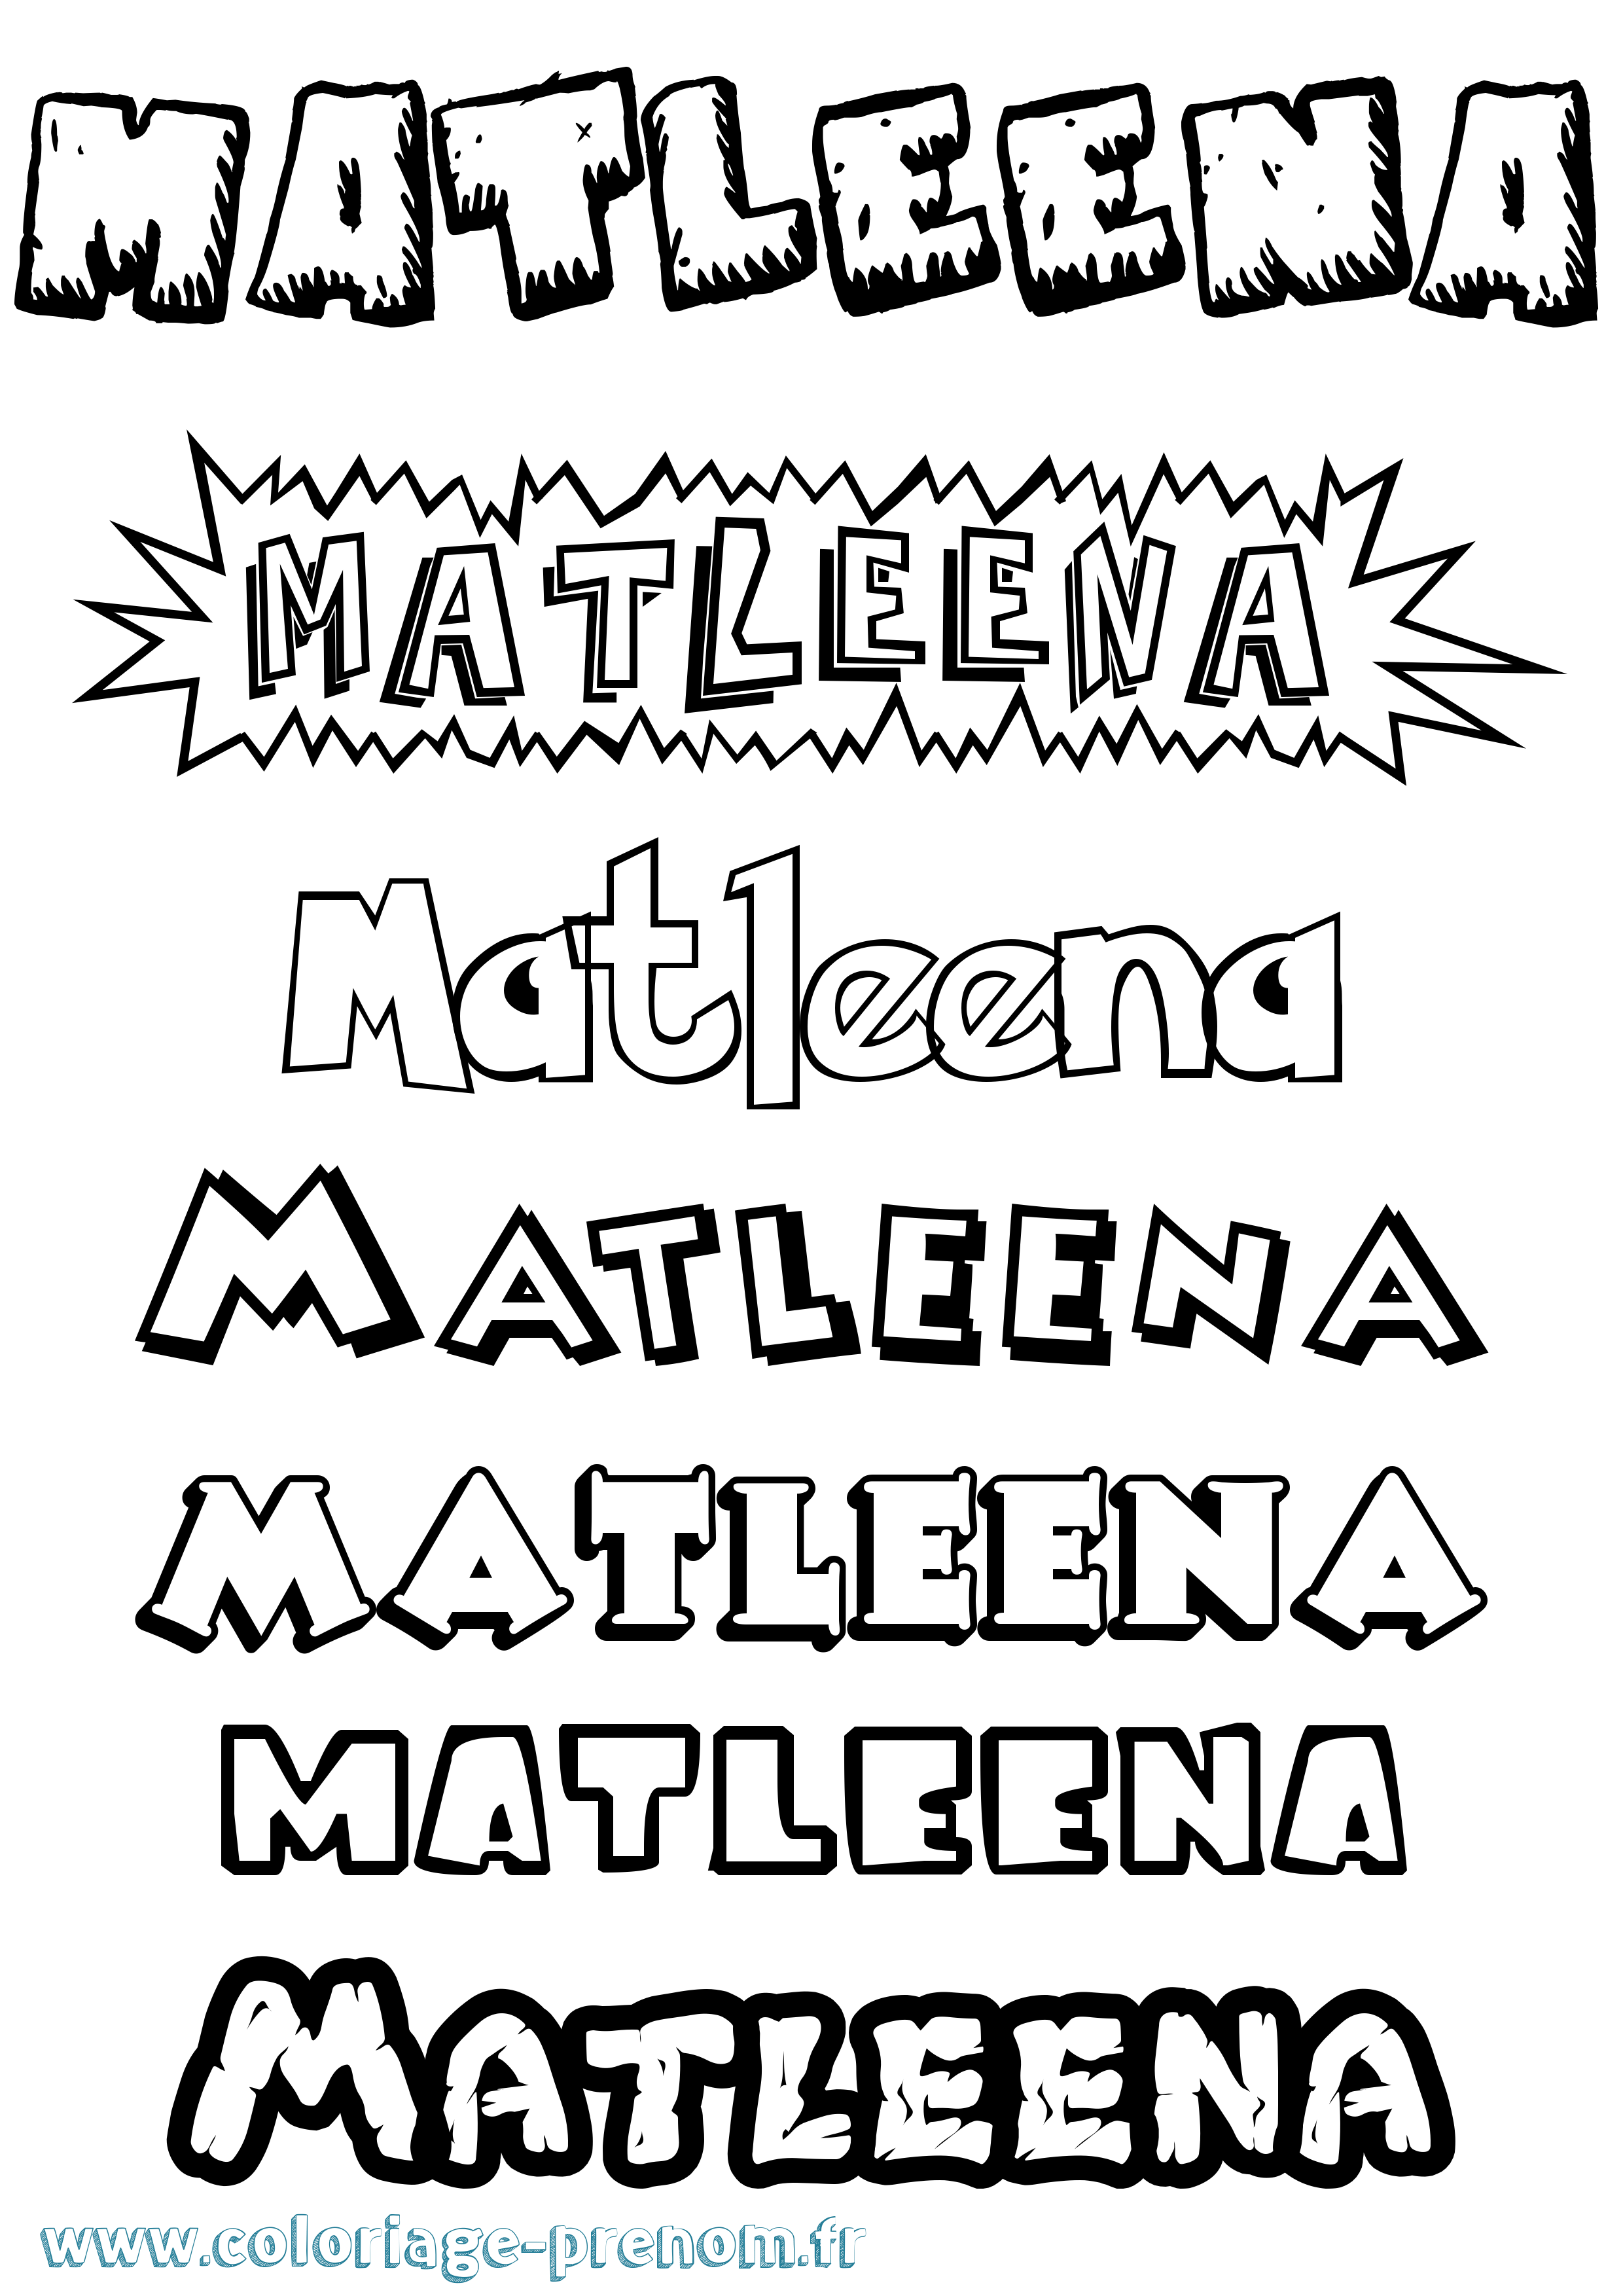 Coloriage prénom Matleena Dessin Animé